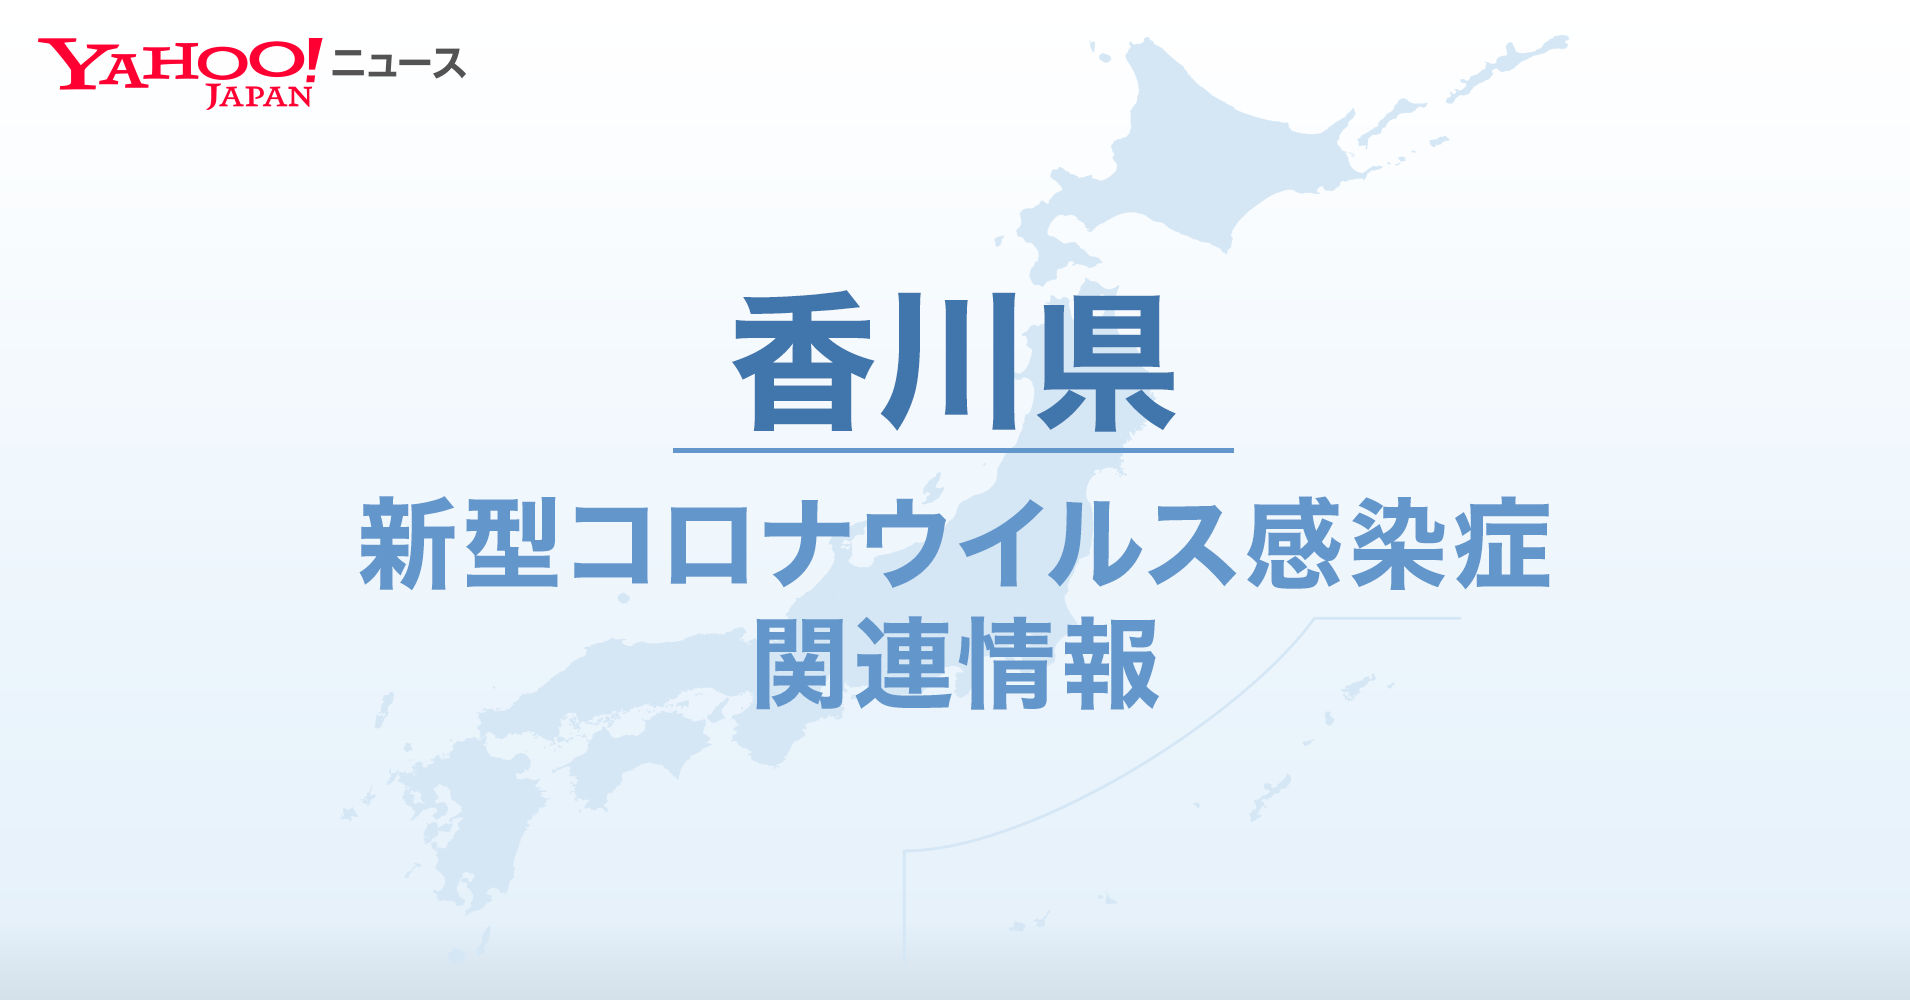 いつまで 香川 まんぼう 香川県で21日から「まん延防止」適用 8市6町が対象